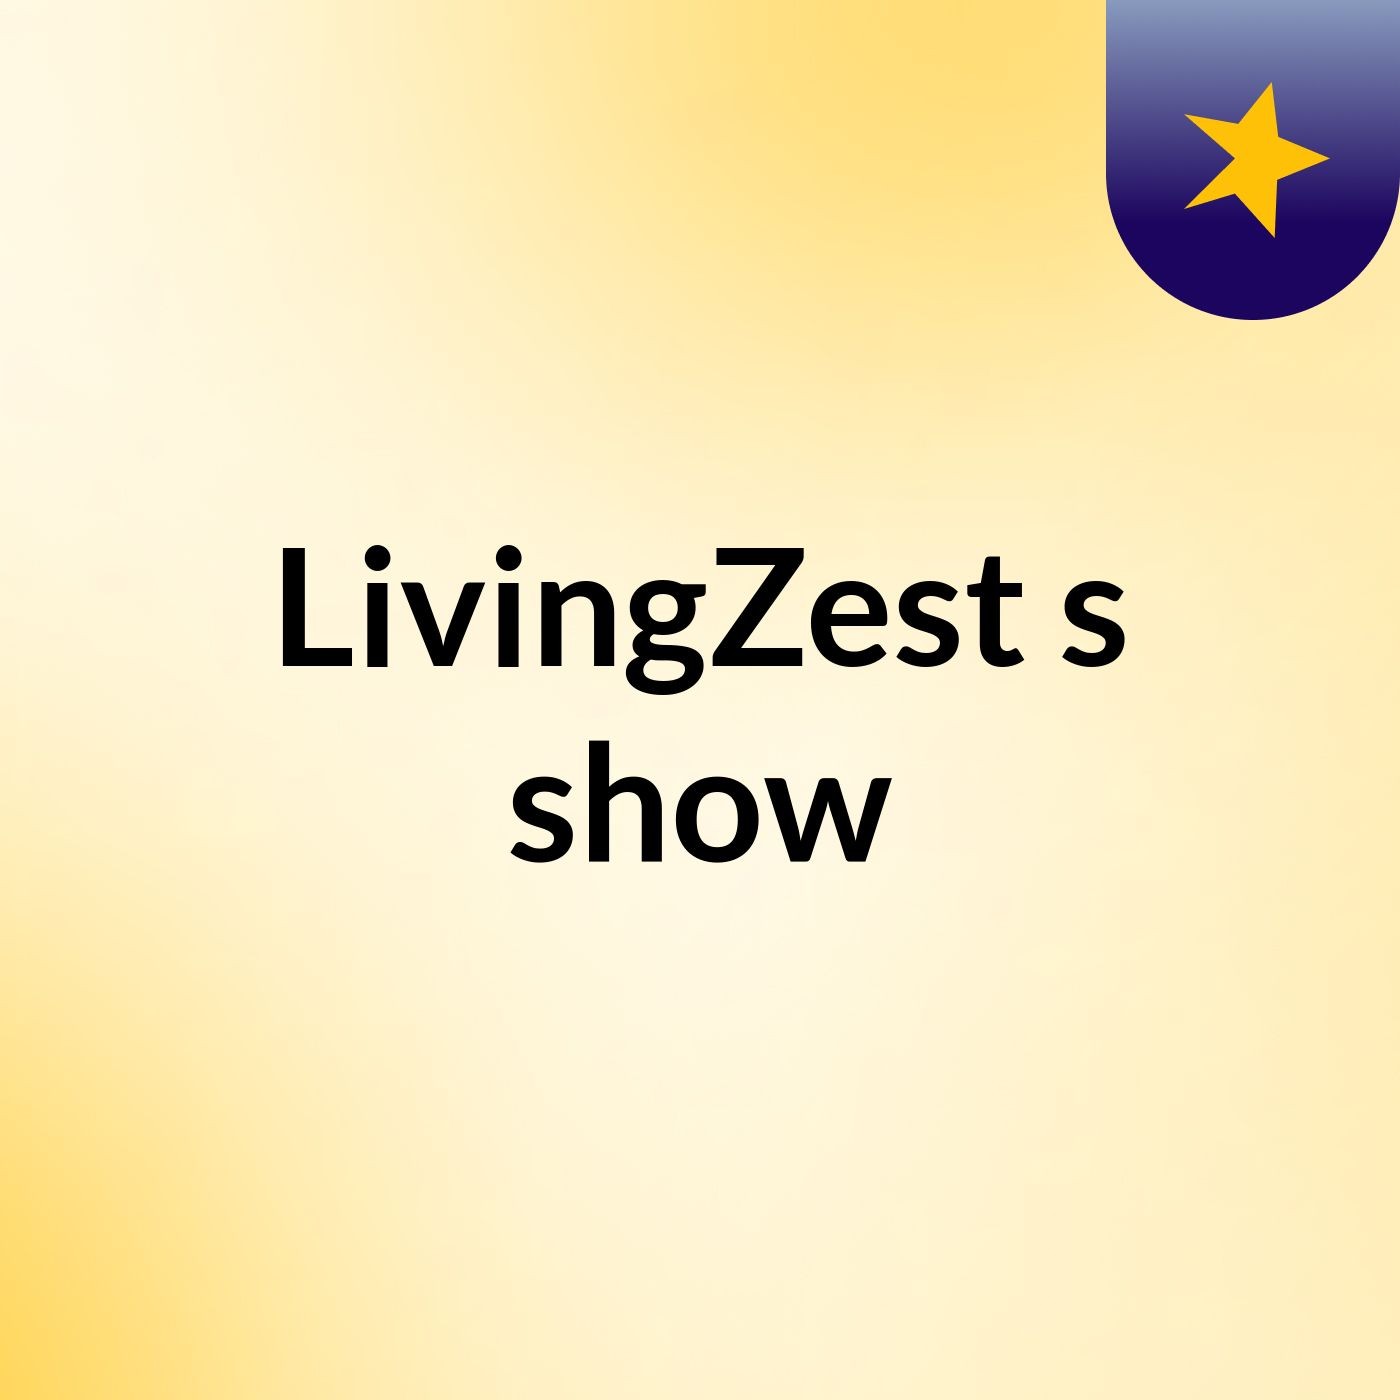 LivingZest's show